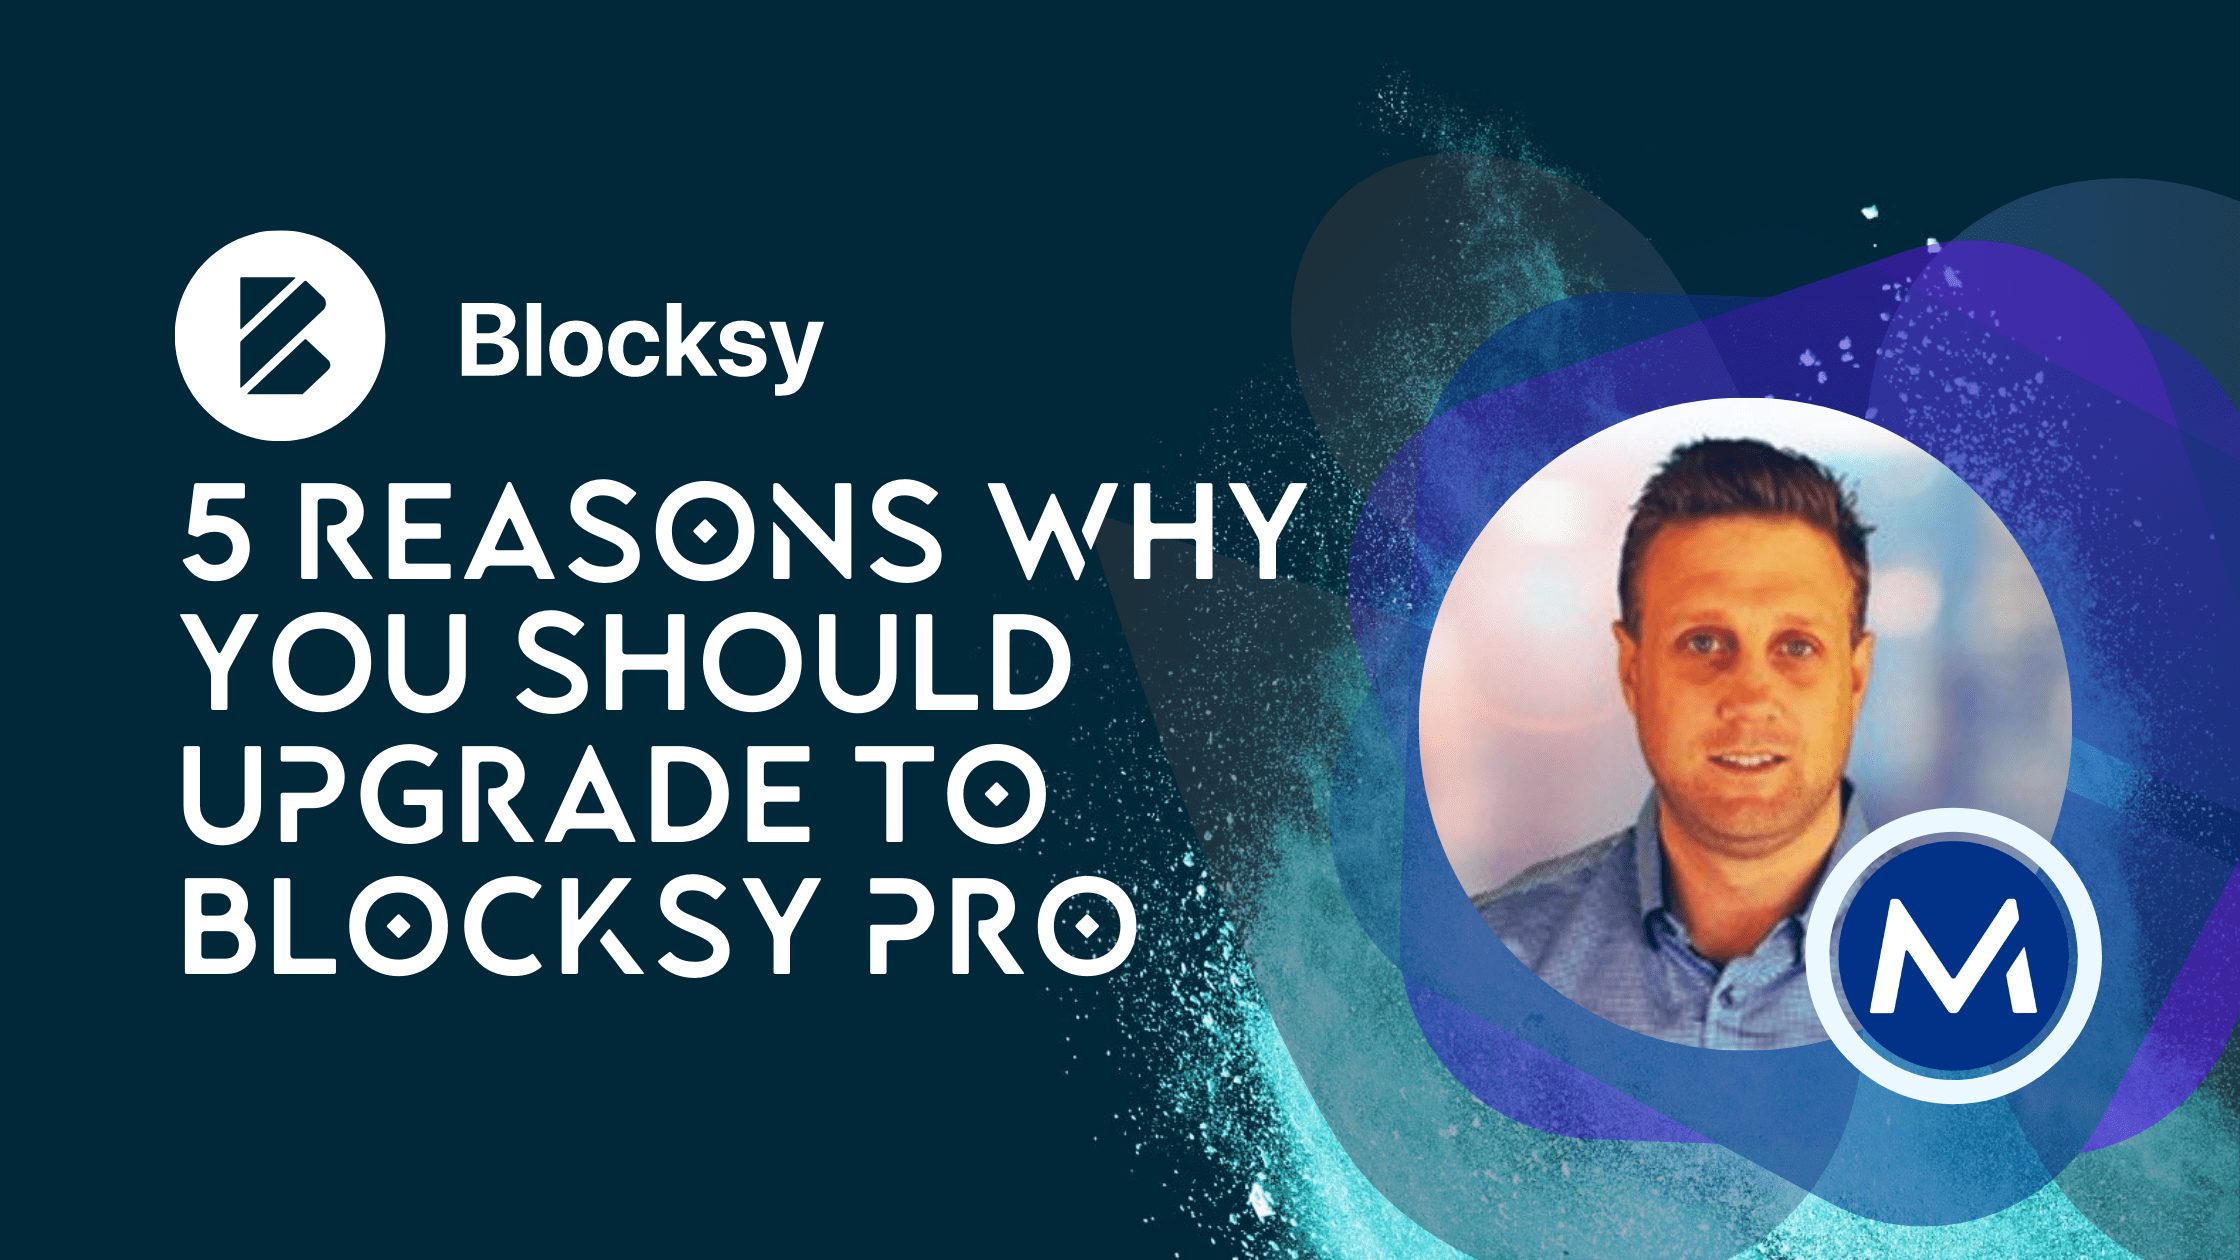 5 Reasons for Blocksy upgrade